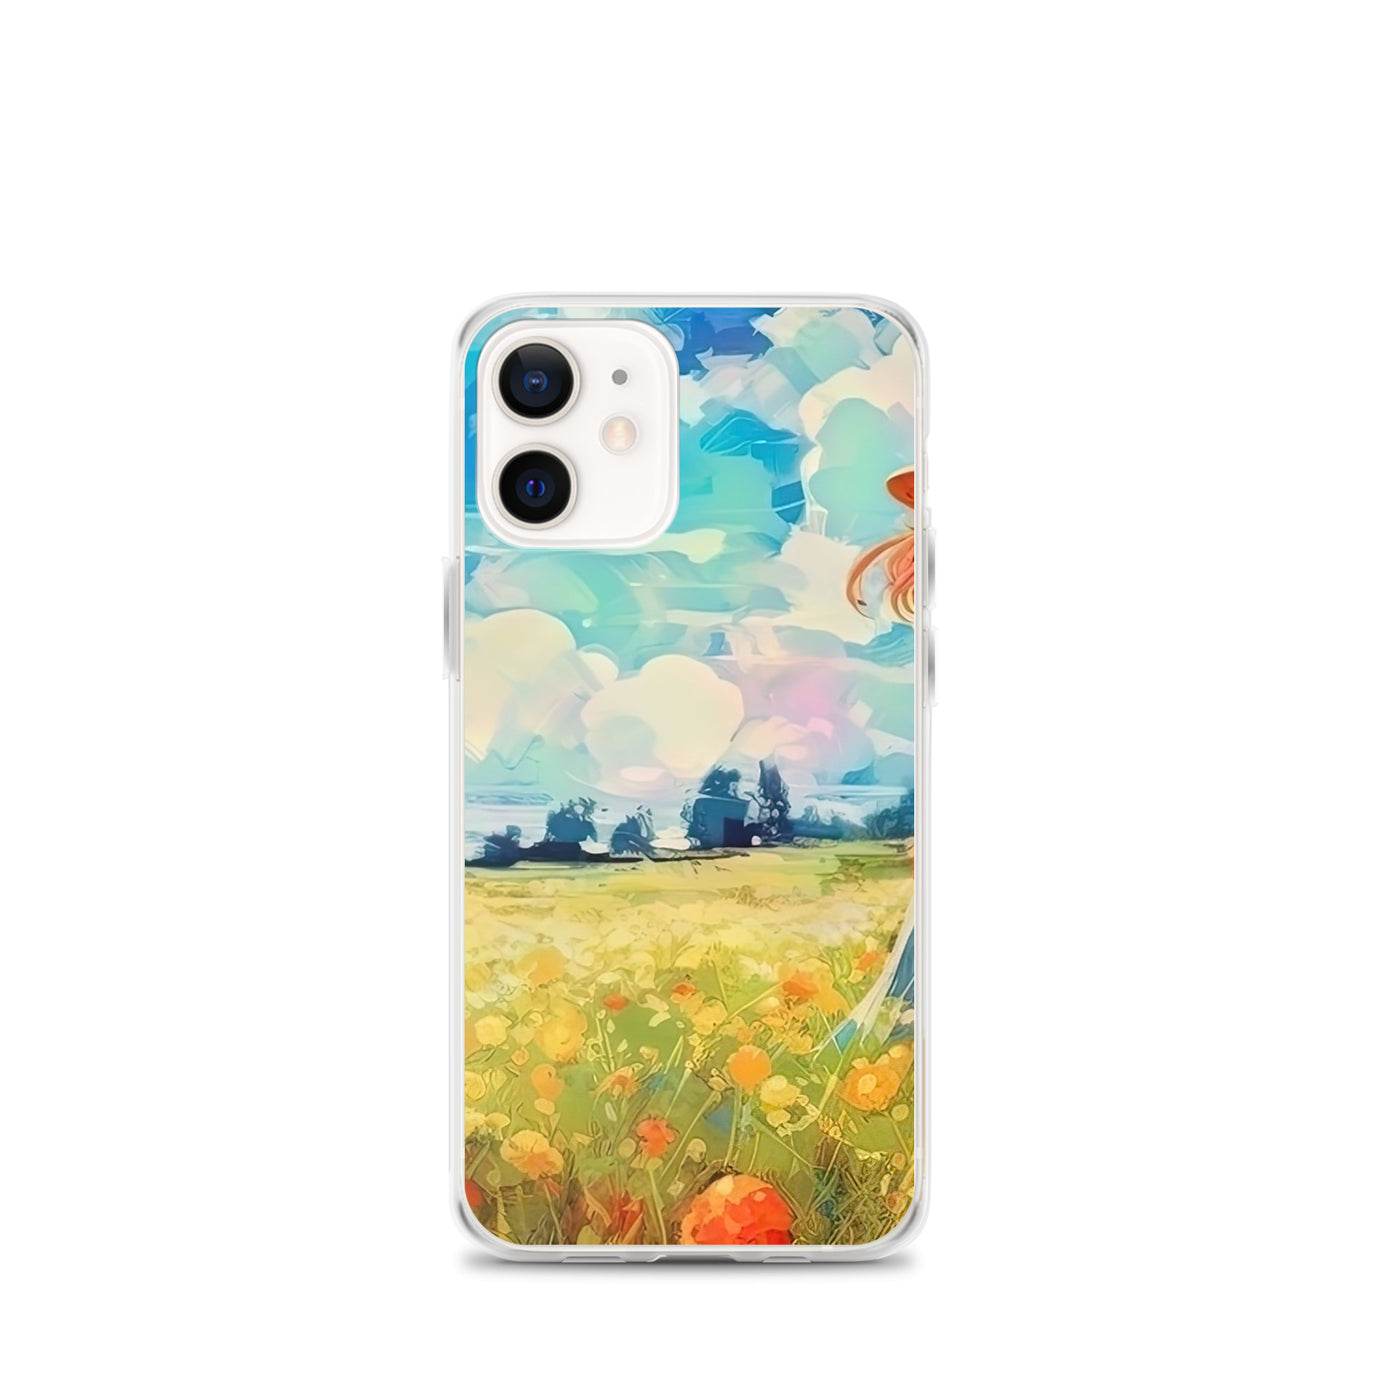 Dame mit Hut im Feld mit Blumen - Landschaftsmalerei - iPhone Schutzhülle (durchsichtig) camping xxx iPhone 12 mini